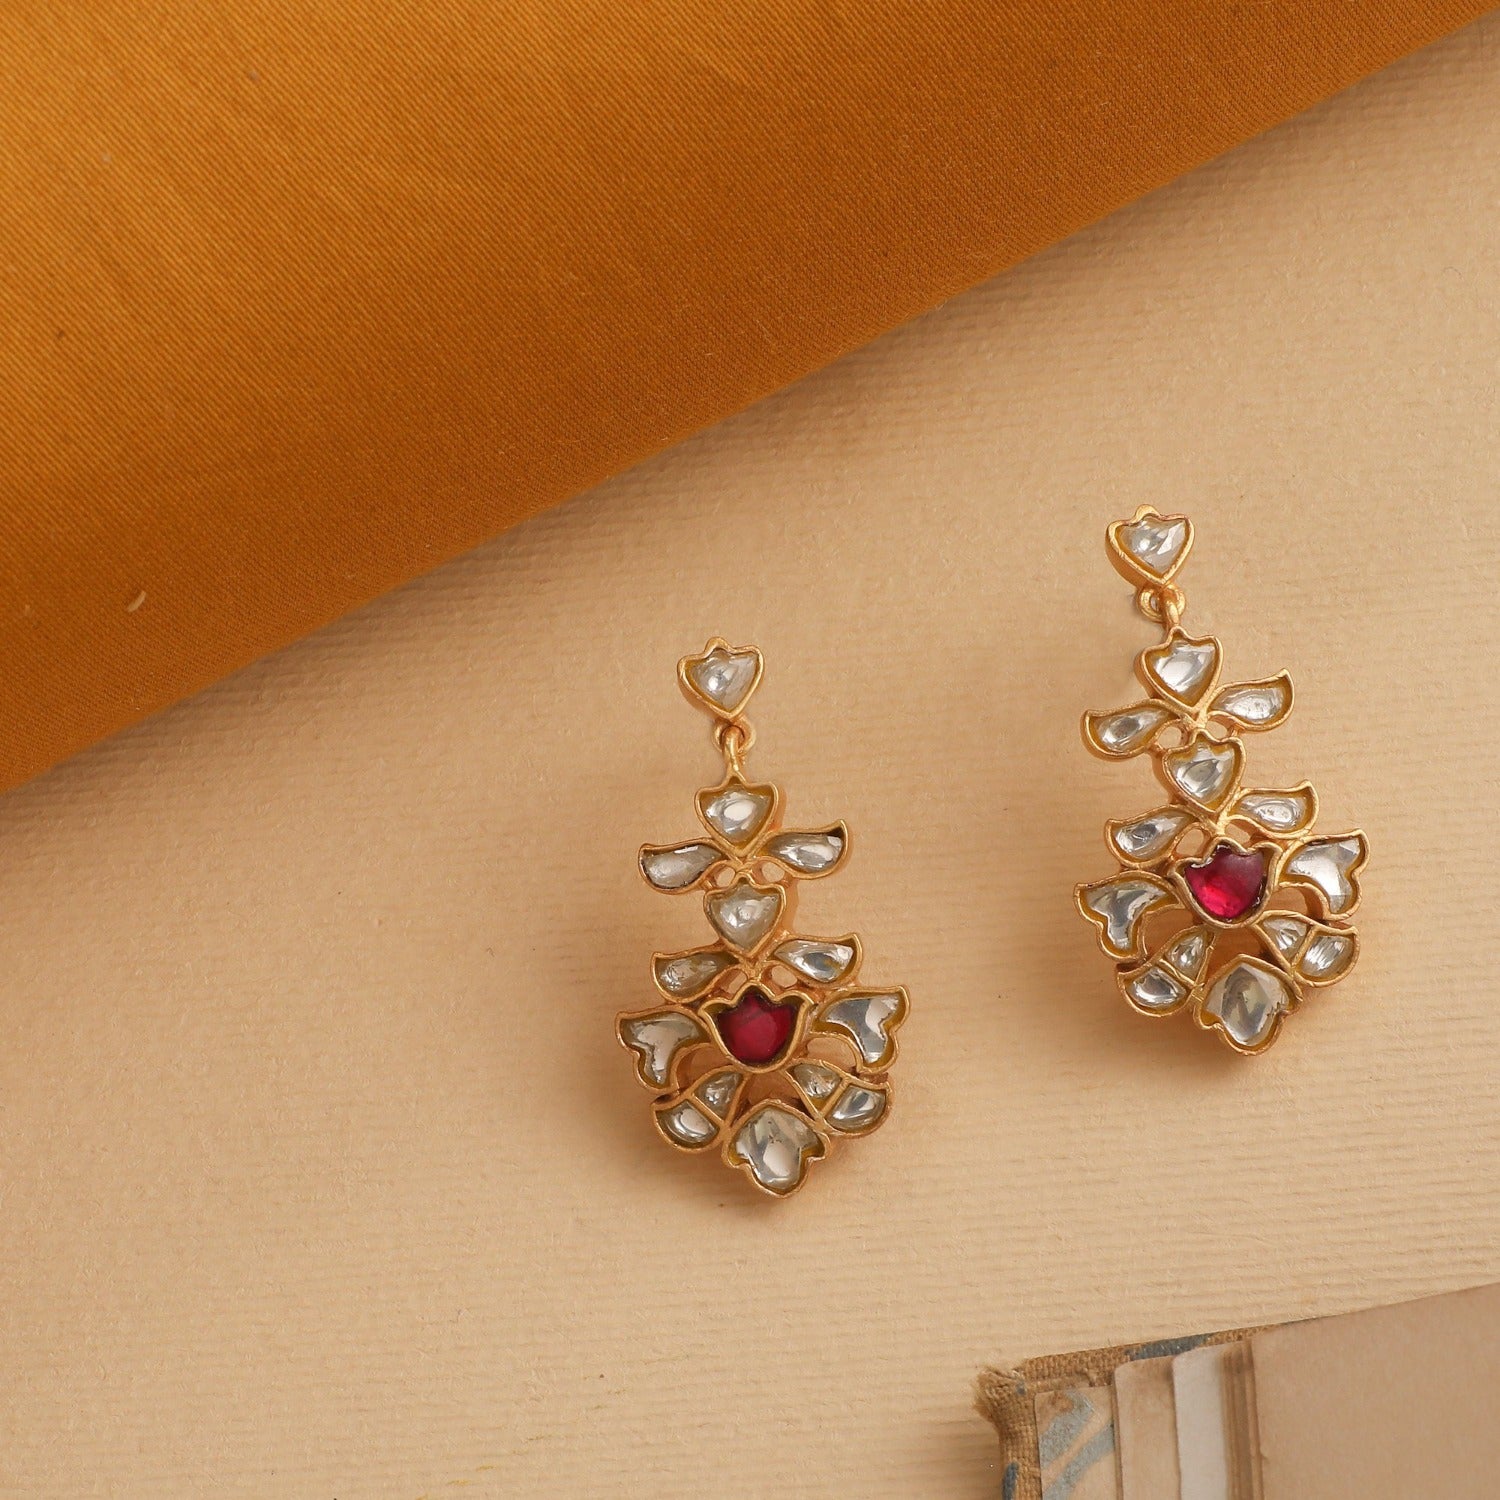 Earrings Tikka Tika Set Jadau Indian Earrings Gold Chandbali - Etsy UK |  Indian earrings, Indian jewelry sets, Indian jewellery design earrings